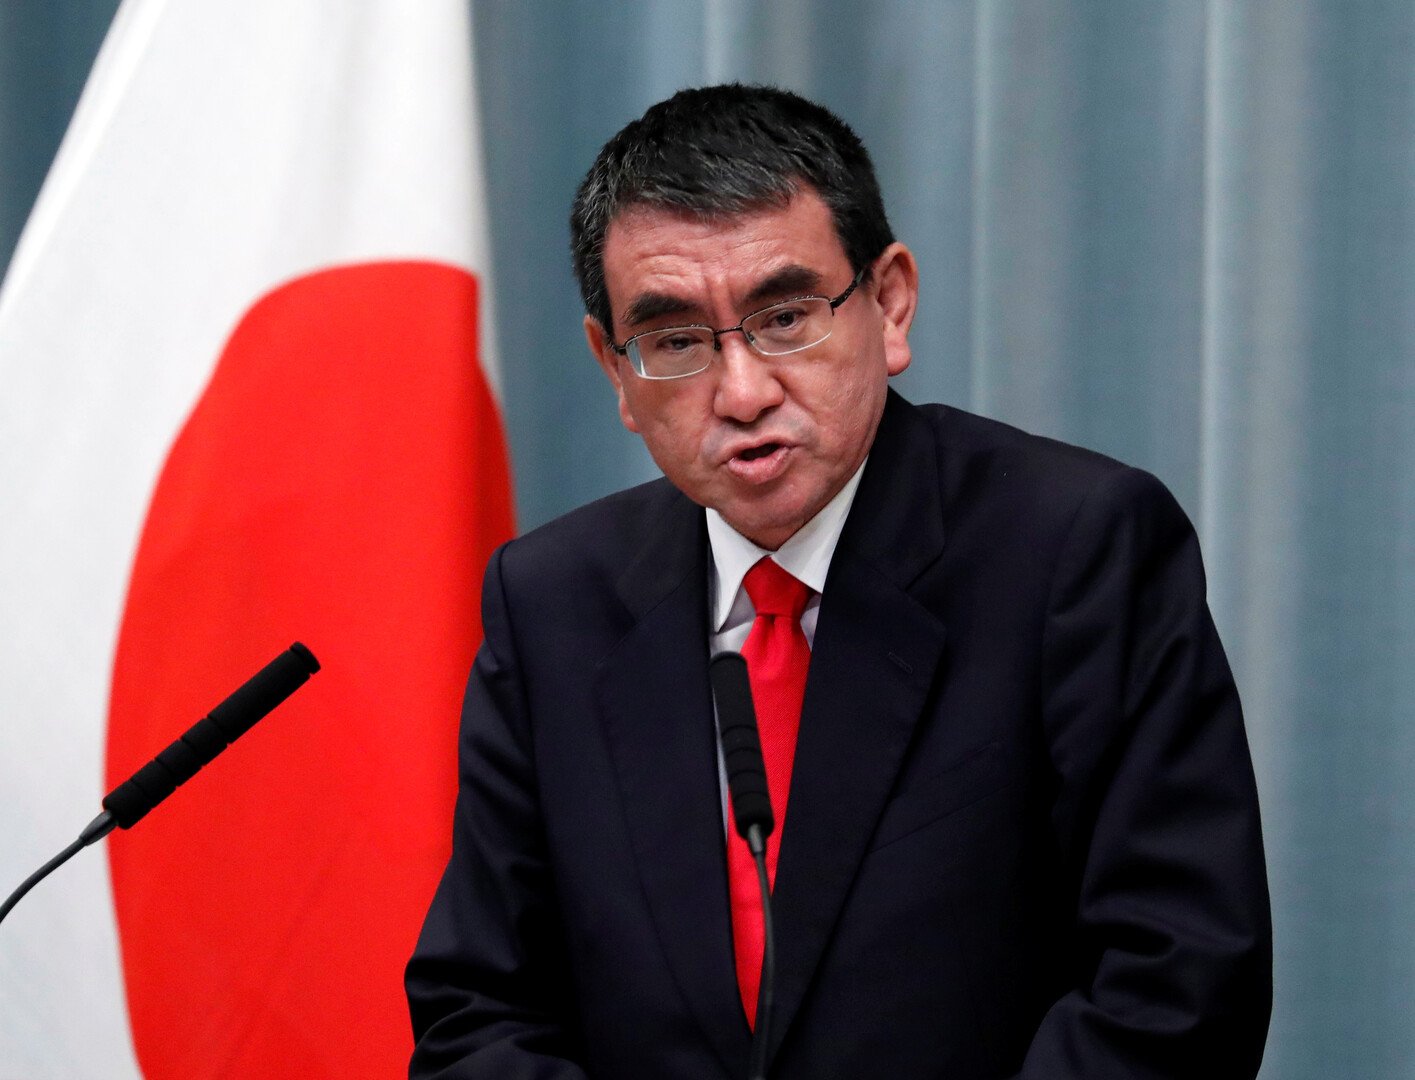 وزير الدفاع الياباني: لسنا على علم بأي تورط إيراني في هجوم 